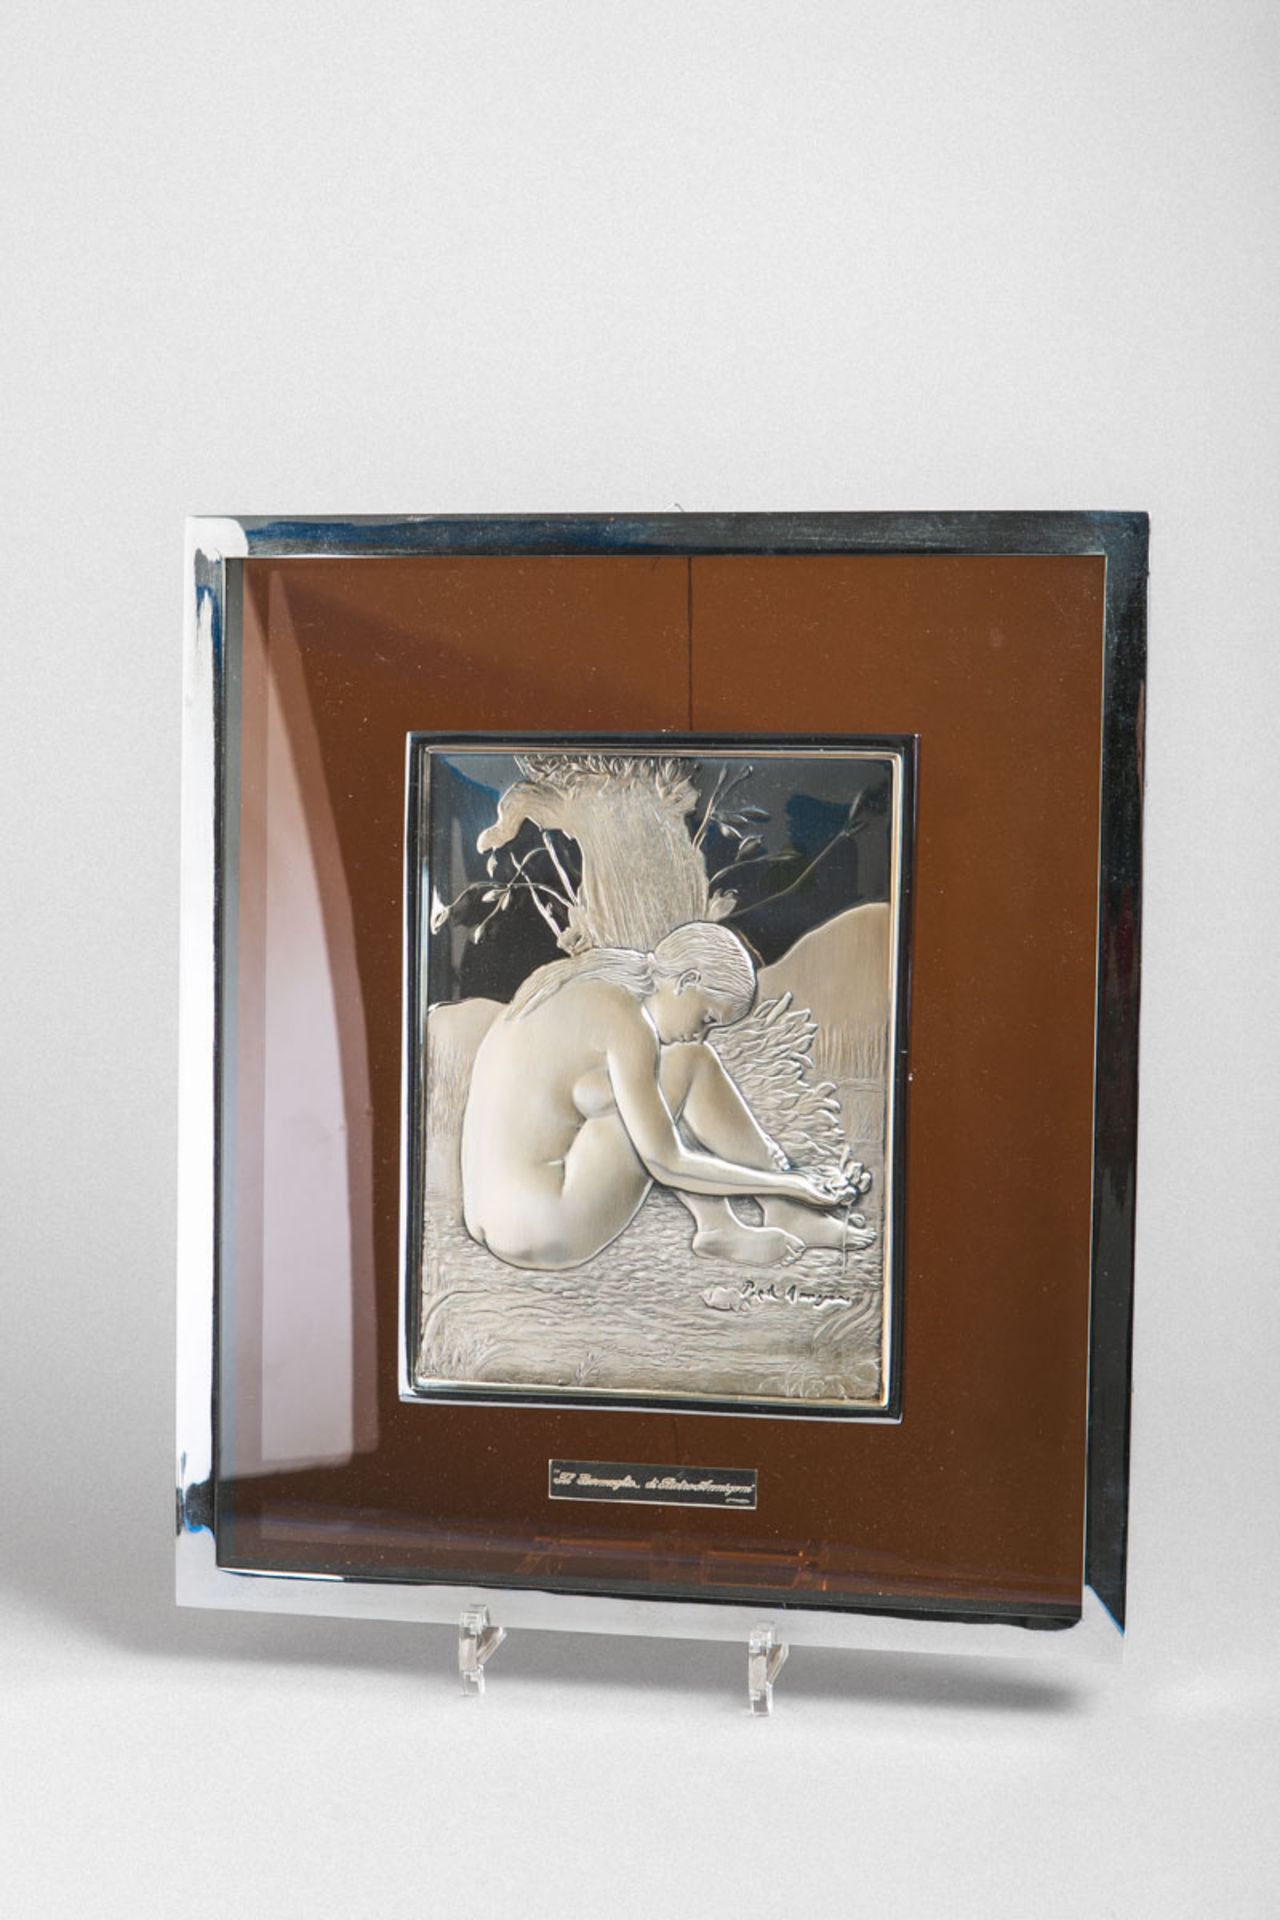 Annigoni, Pietro (1910 - 1988), Silberrelief "Il Germoglio"